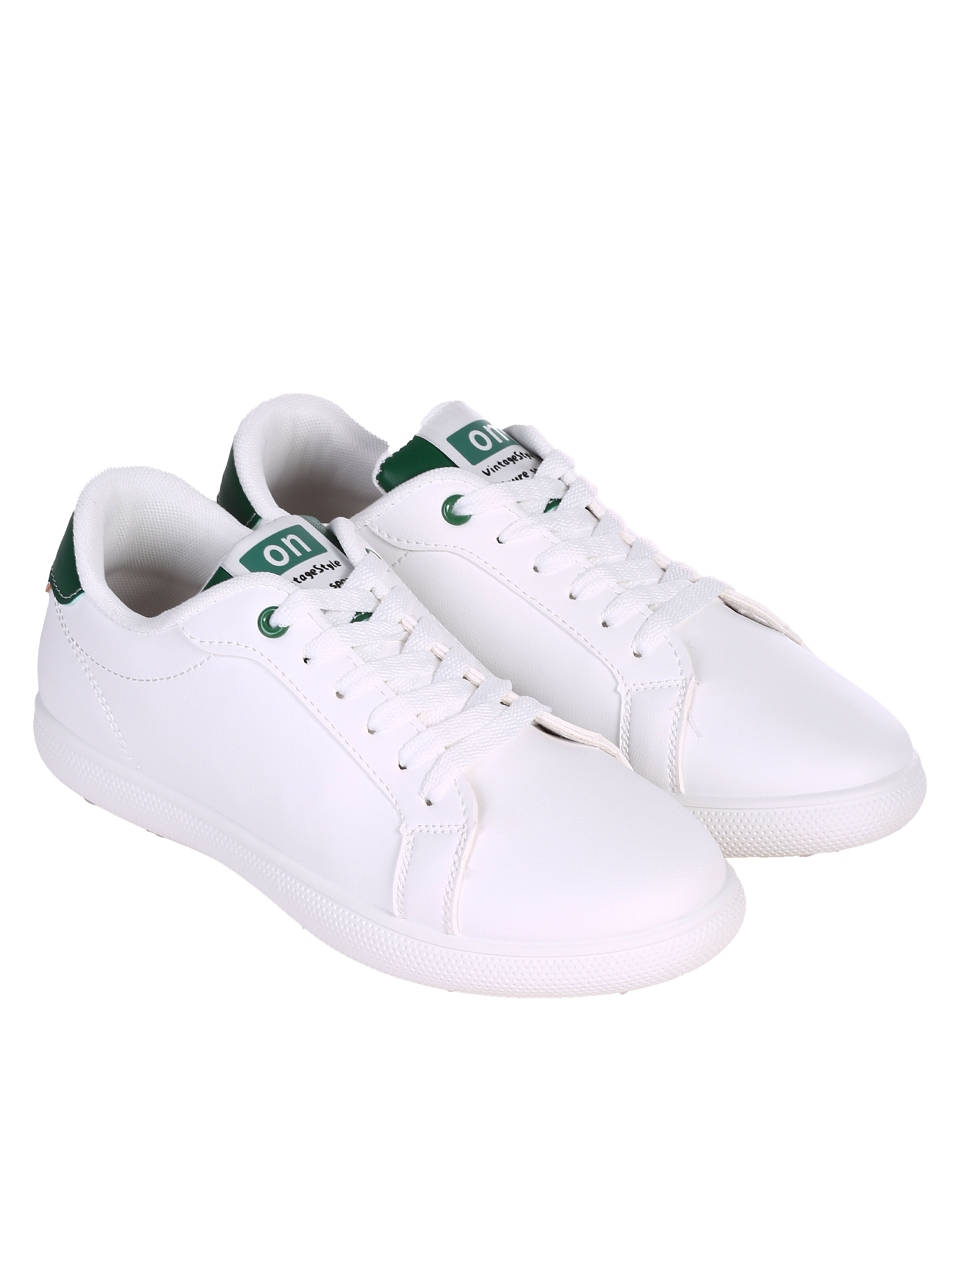 Eжедневни мъжки комфортни обувки в бял/зелен цвят 7U-24119 white/green